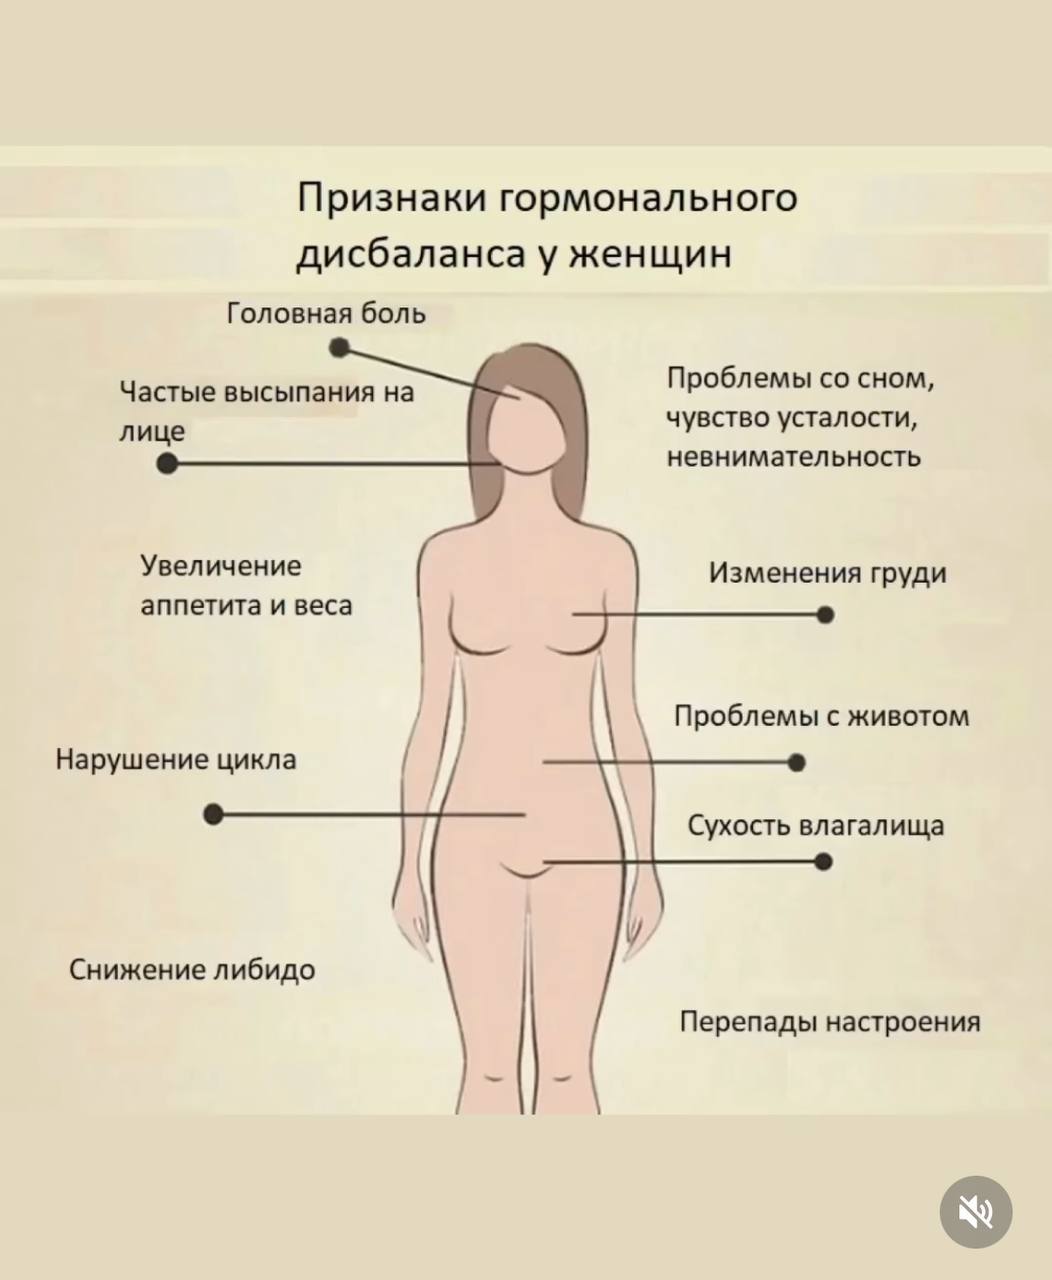 какие болезни грудей бывают у женщин фото 76